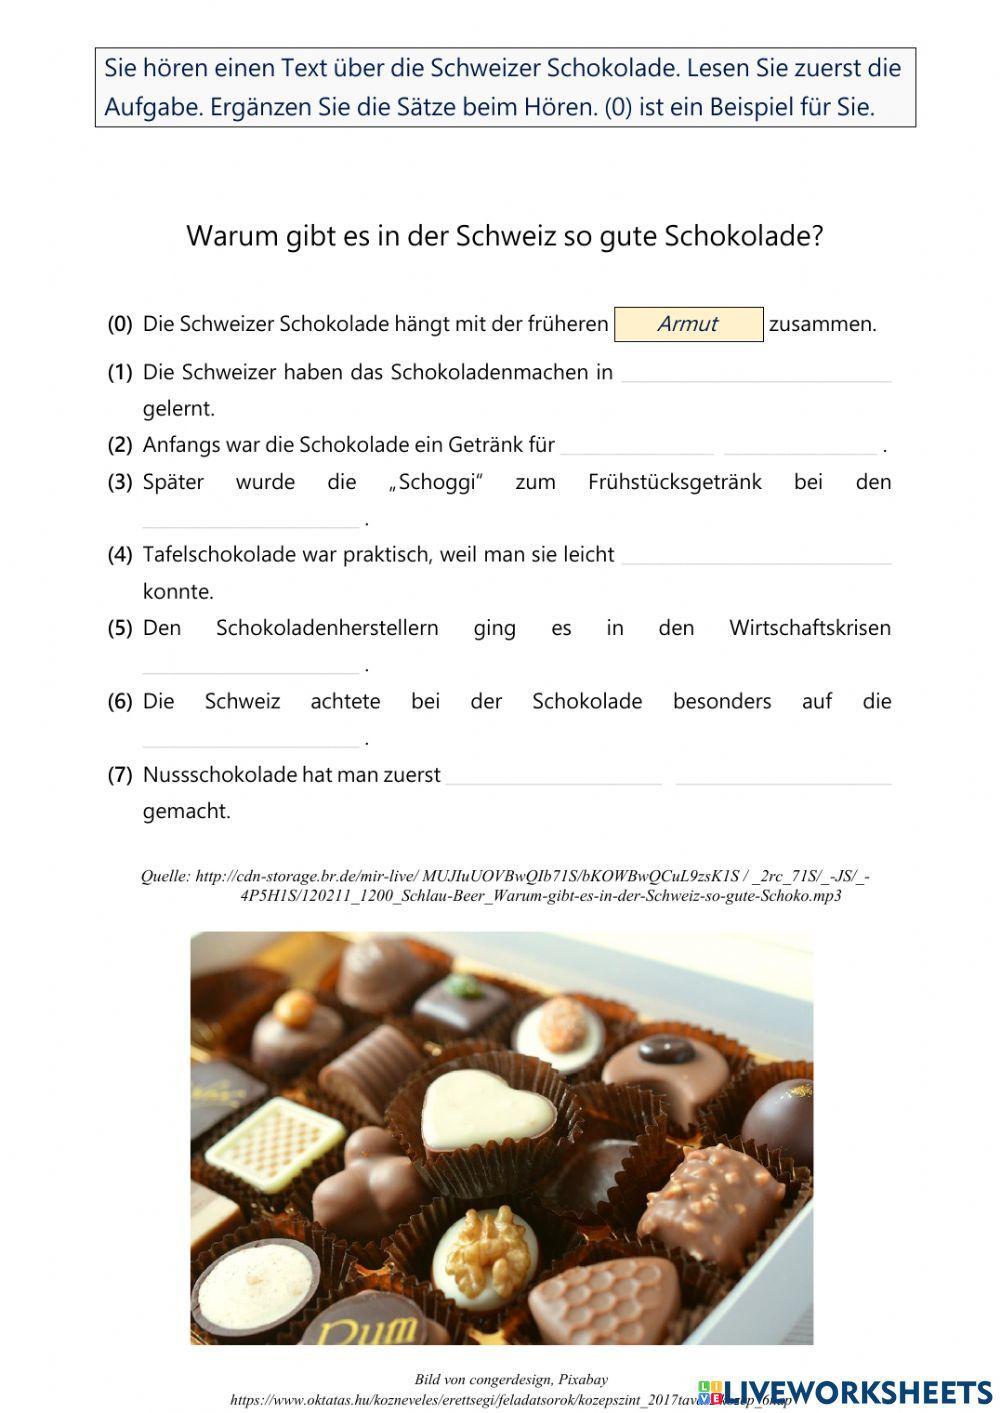 Die Schweizer Schokolade